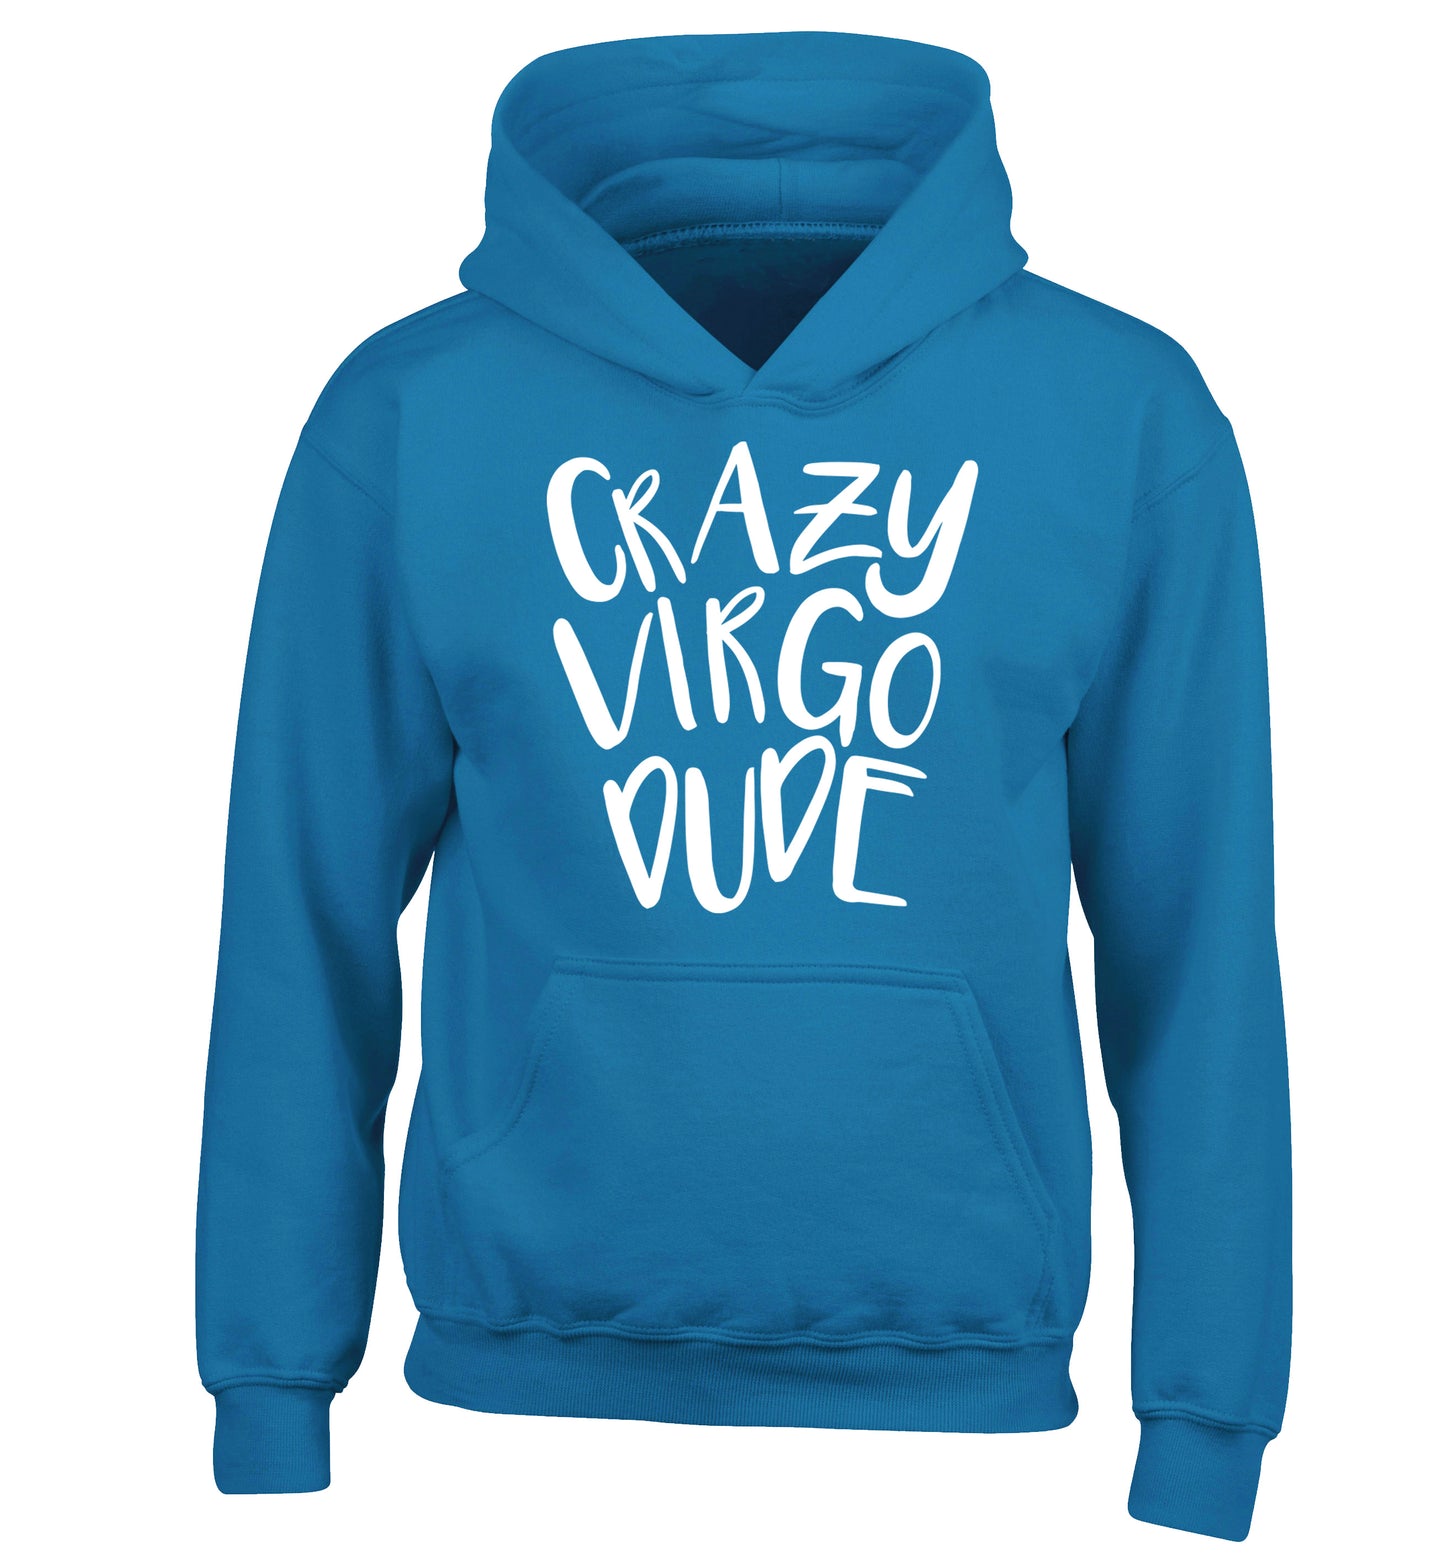 Crazy virgo dude children's blue hoodie 12-13 Years